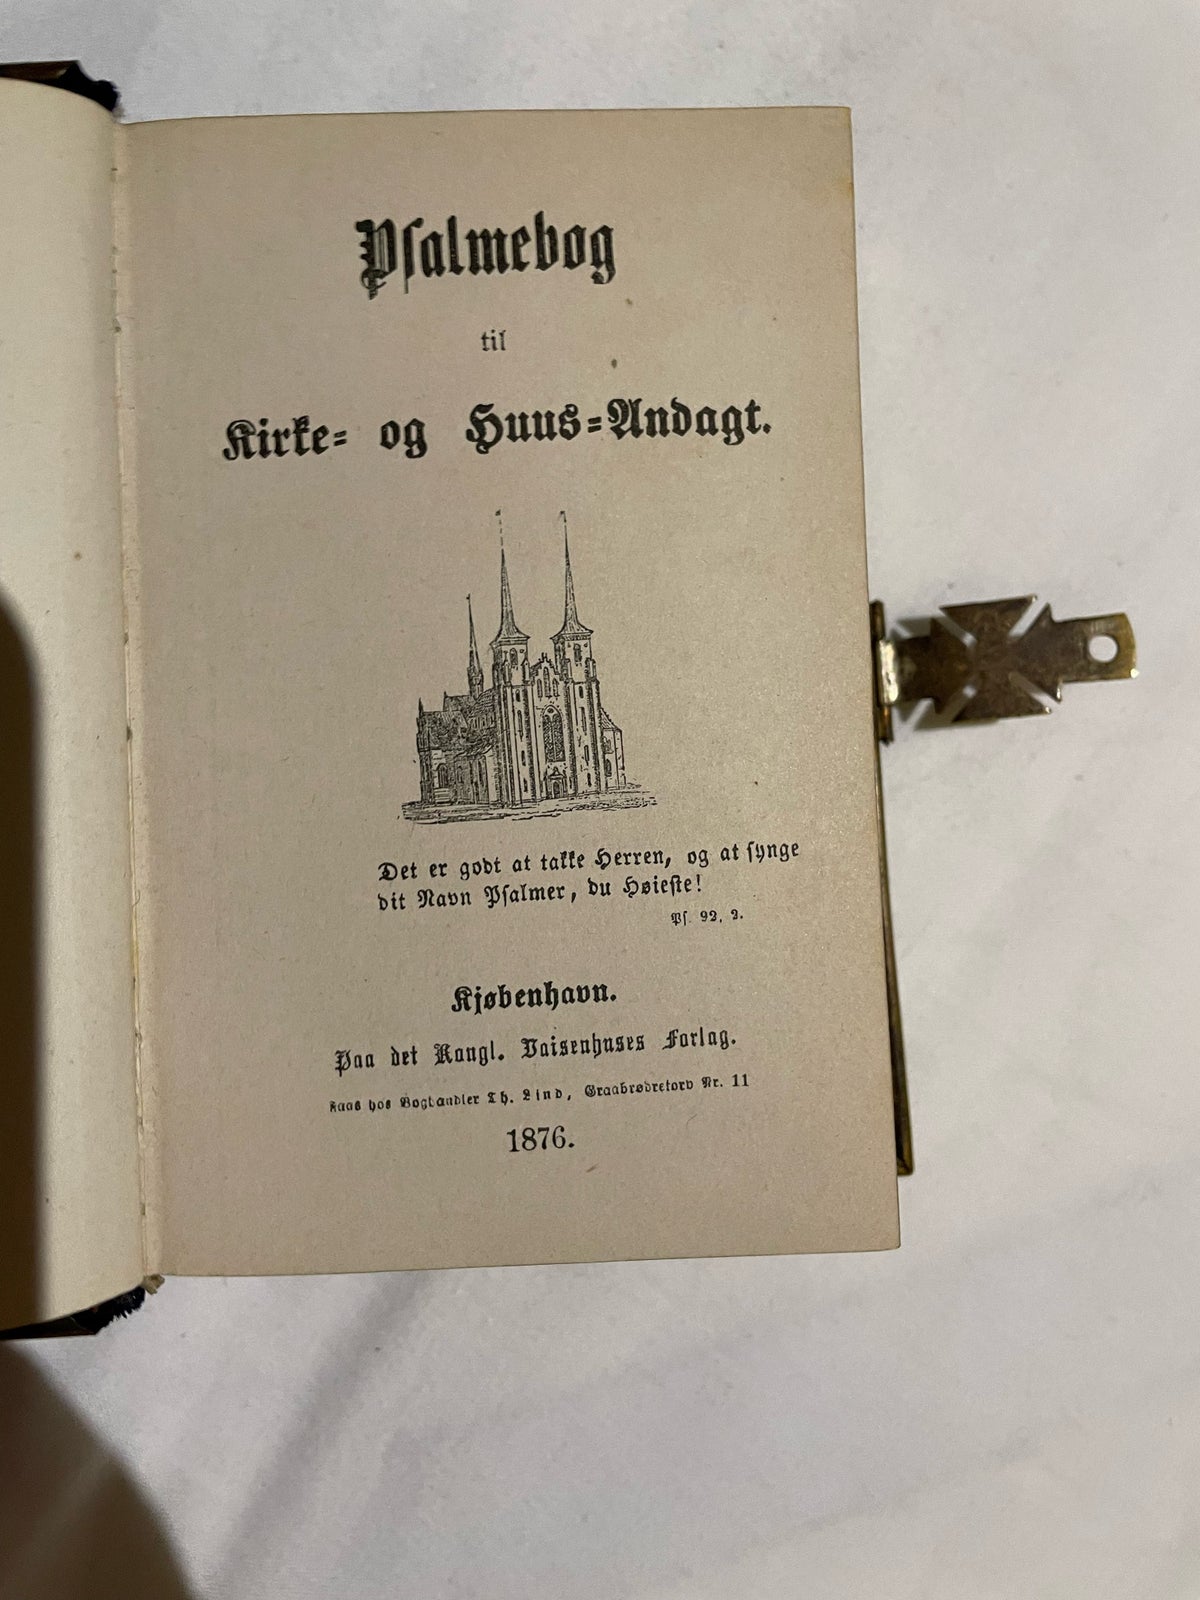 Salmebog, Kgl. Boisenshuses forlag, år 1876